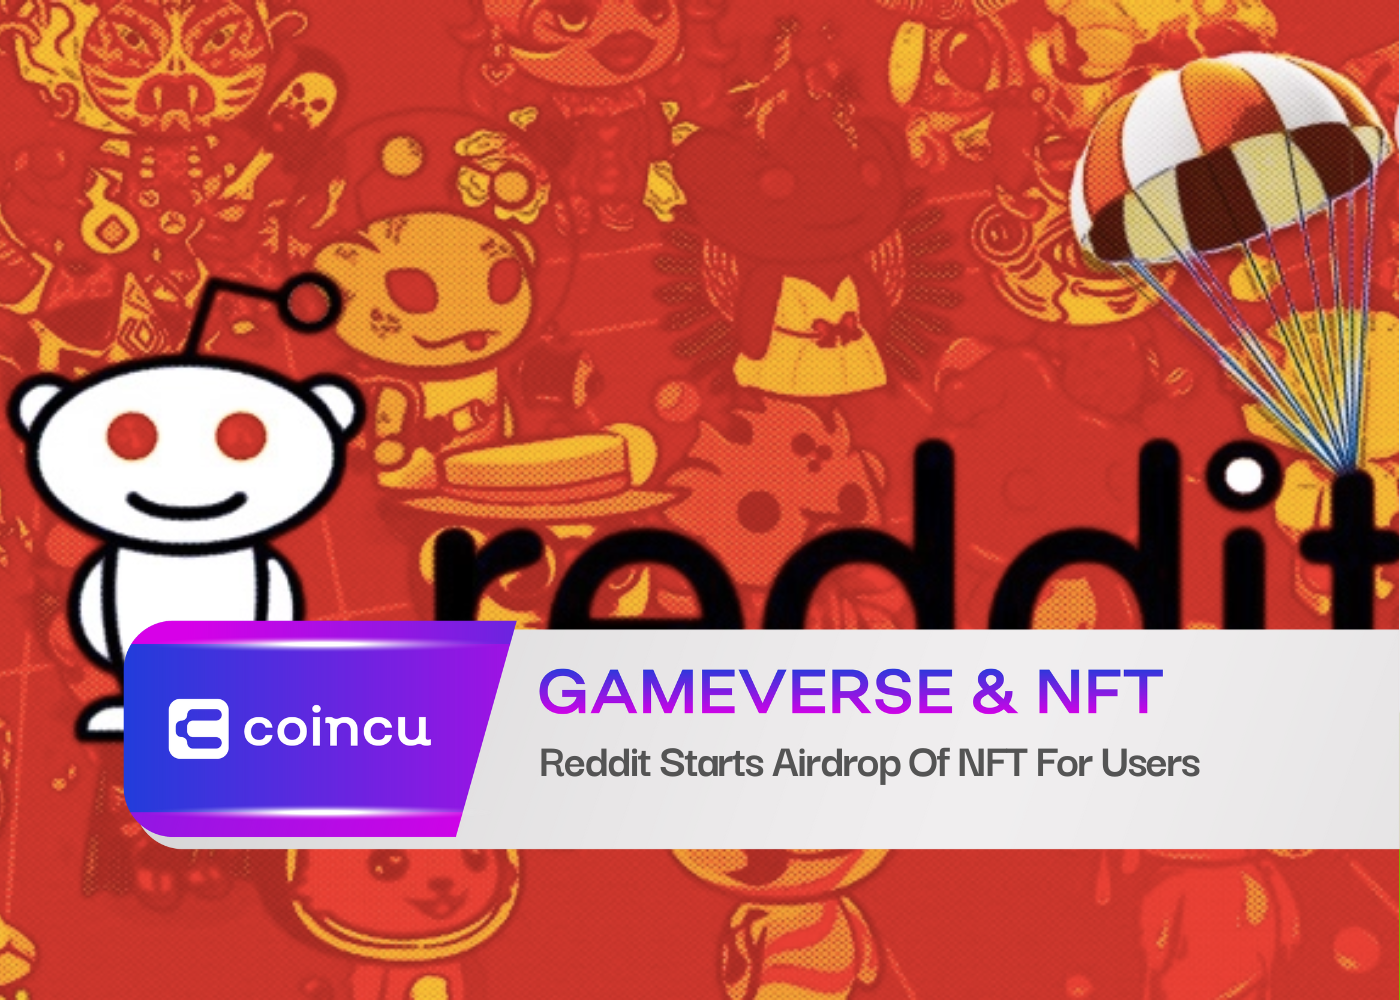 Reddit запускает раздачу NFT для пользователей